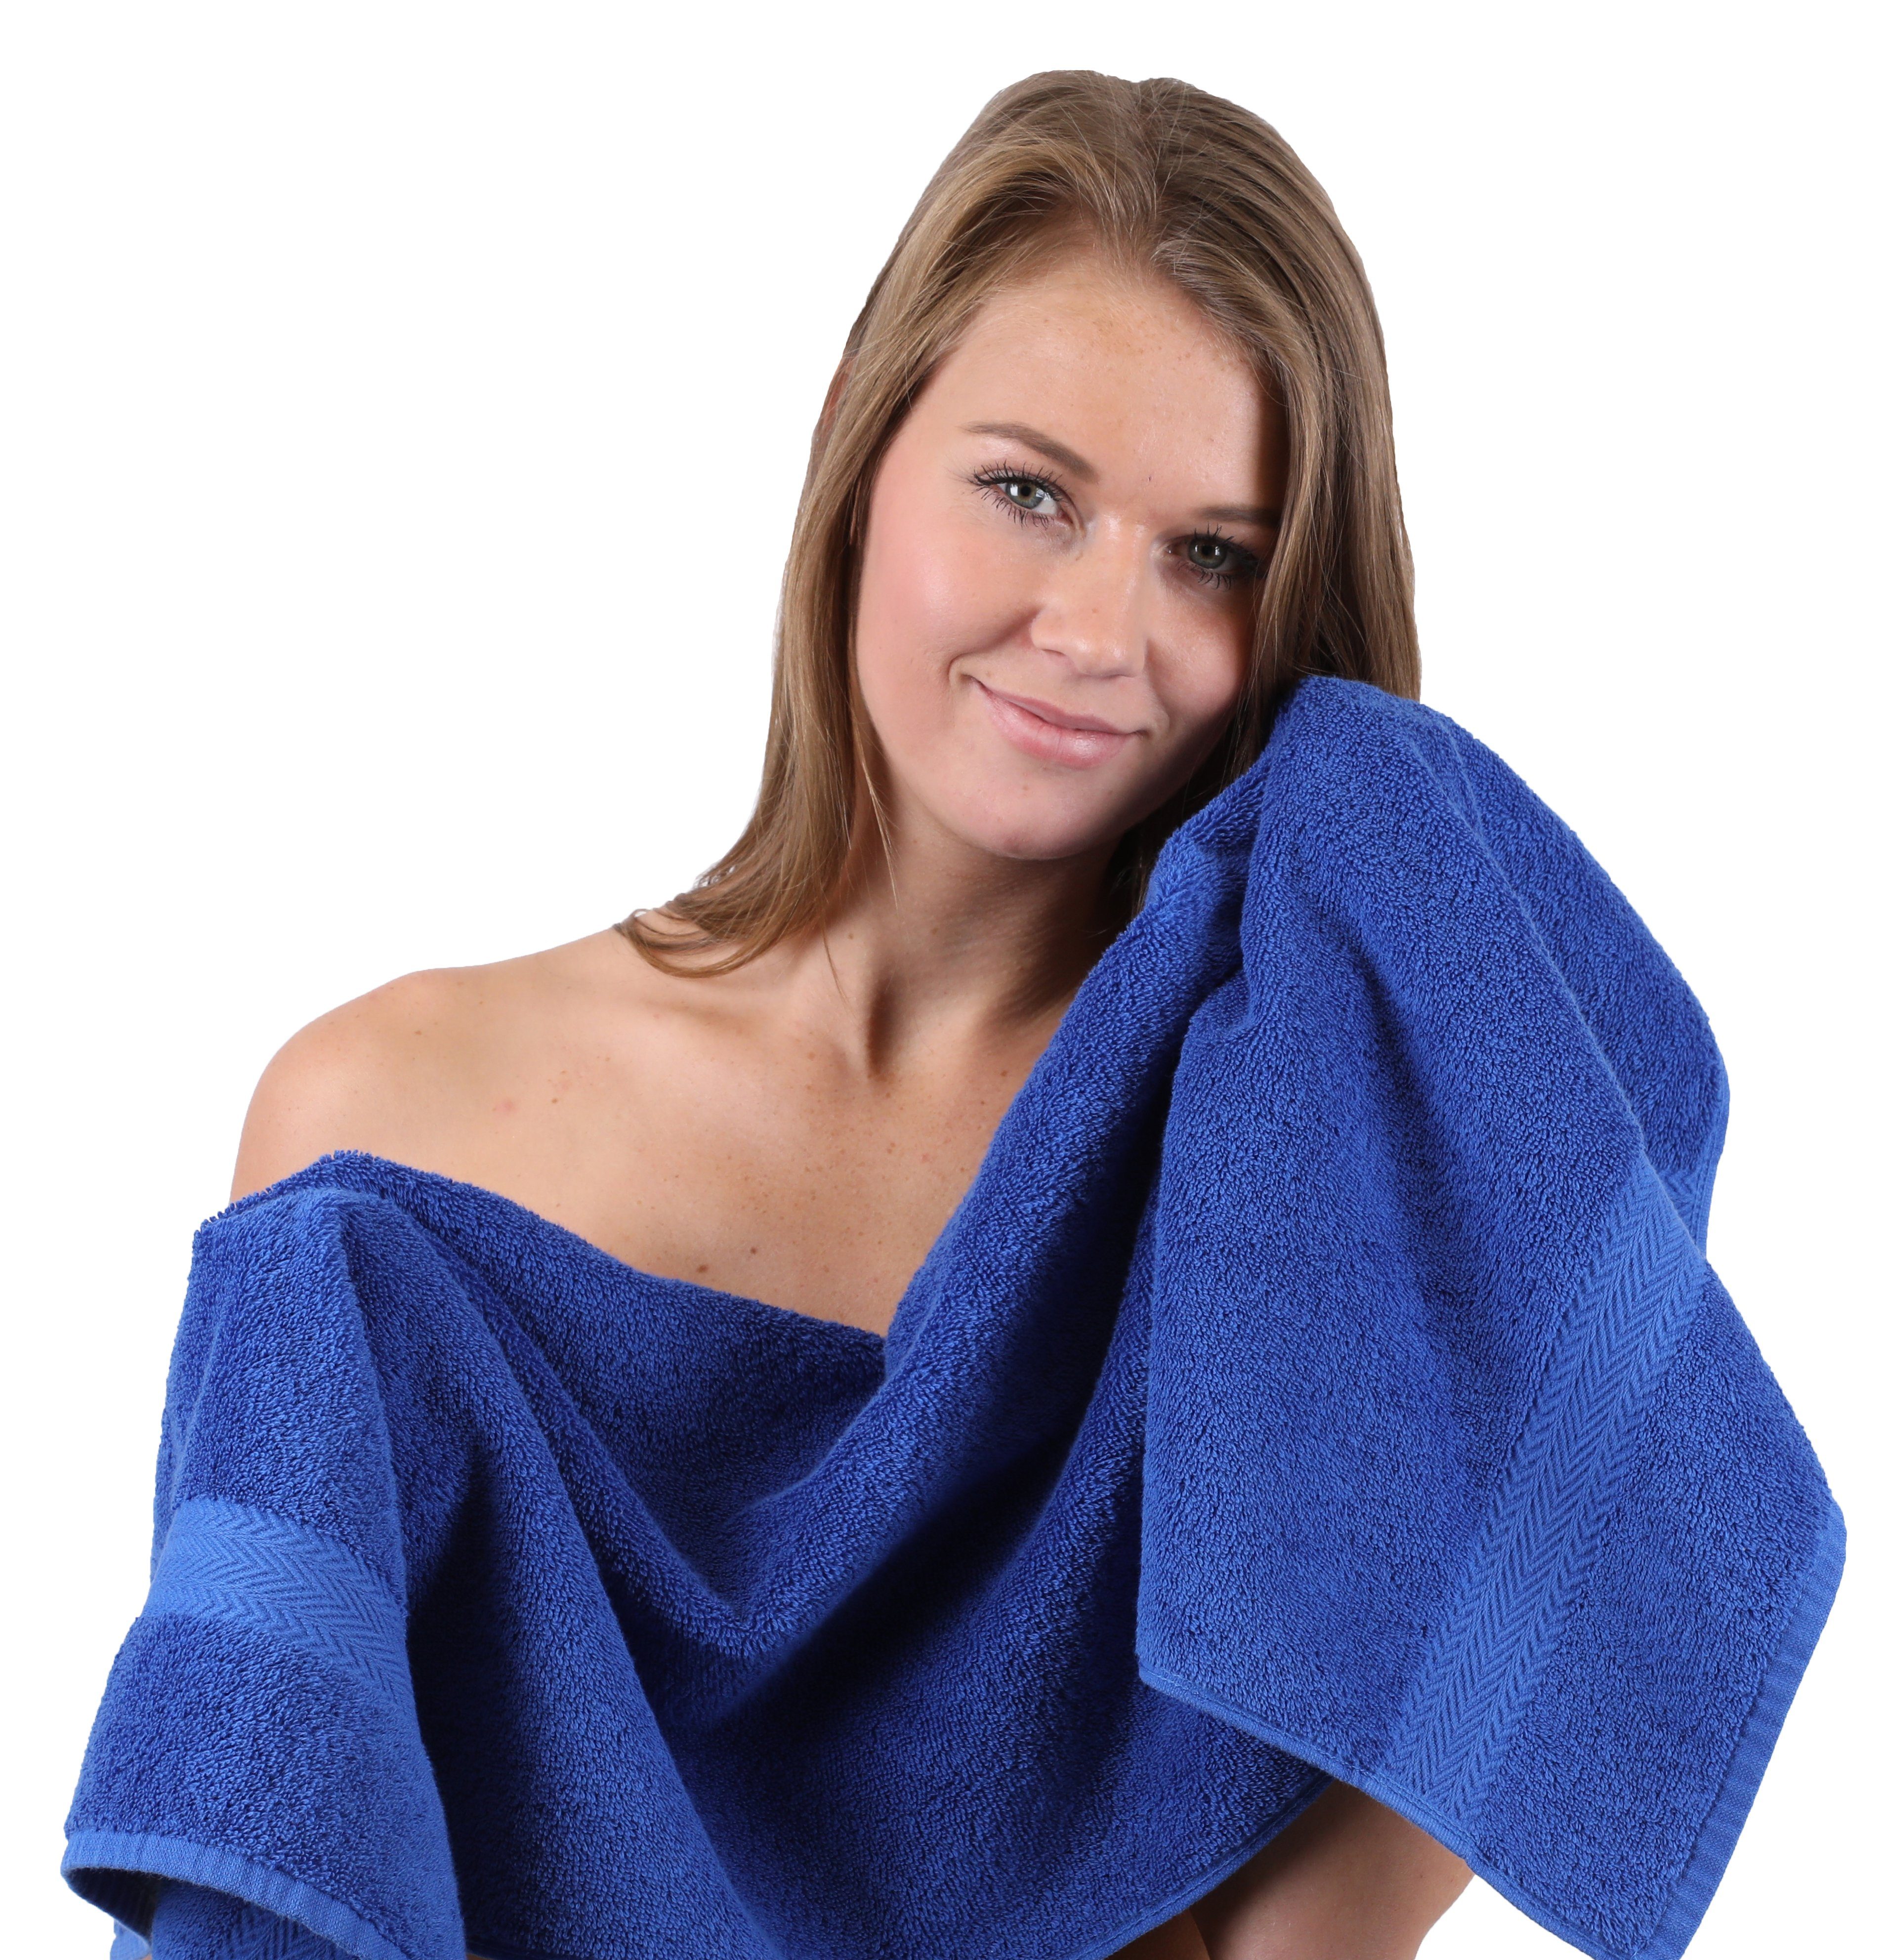 Premium 2 4 Handtücher Blau Handtuch-Set Baumwolle, Baumwolle Beige, 100% 100% Betz Waschhandschuhe Gästetücher (10-tlg) 2 Farbe & 2 Duschtücher 10-TLG. Handtuch Set Royal